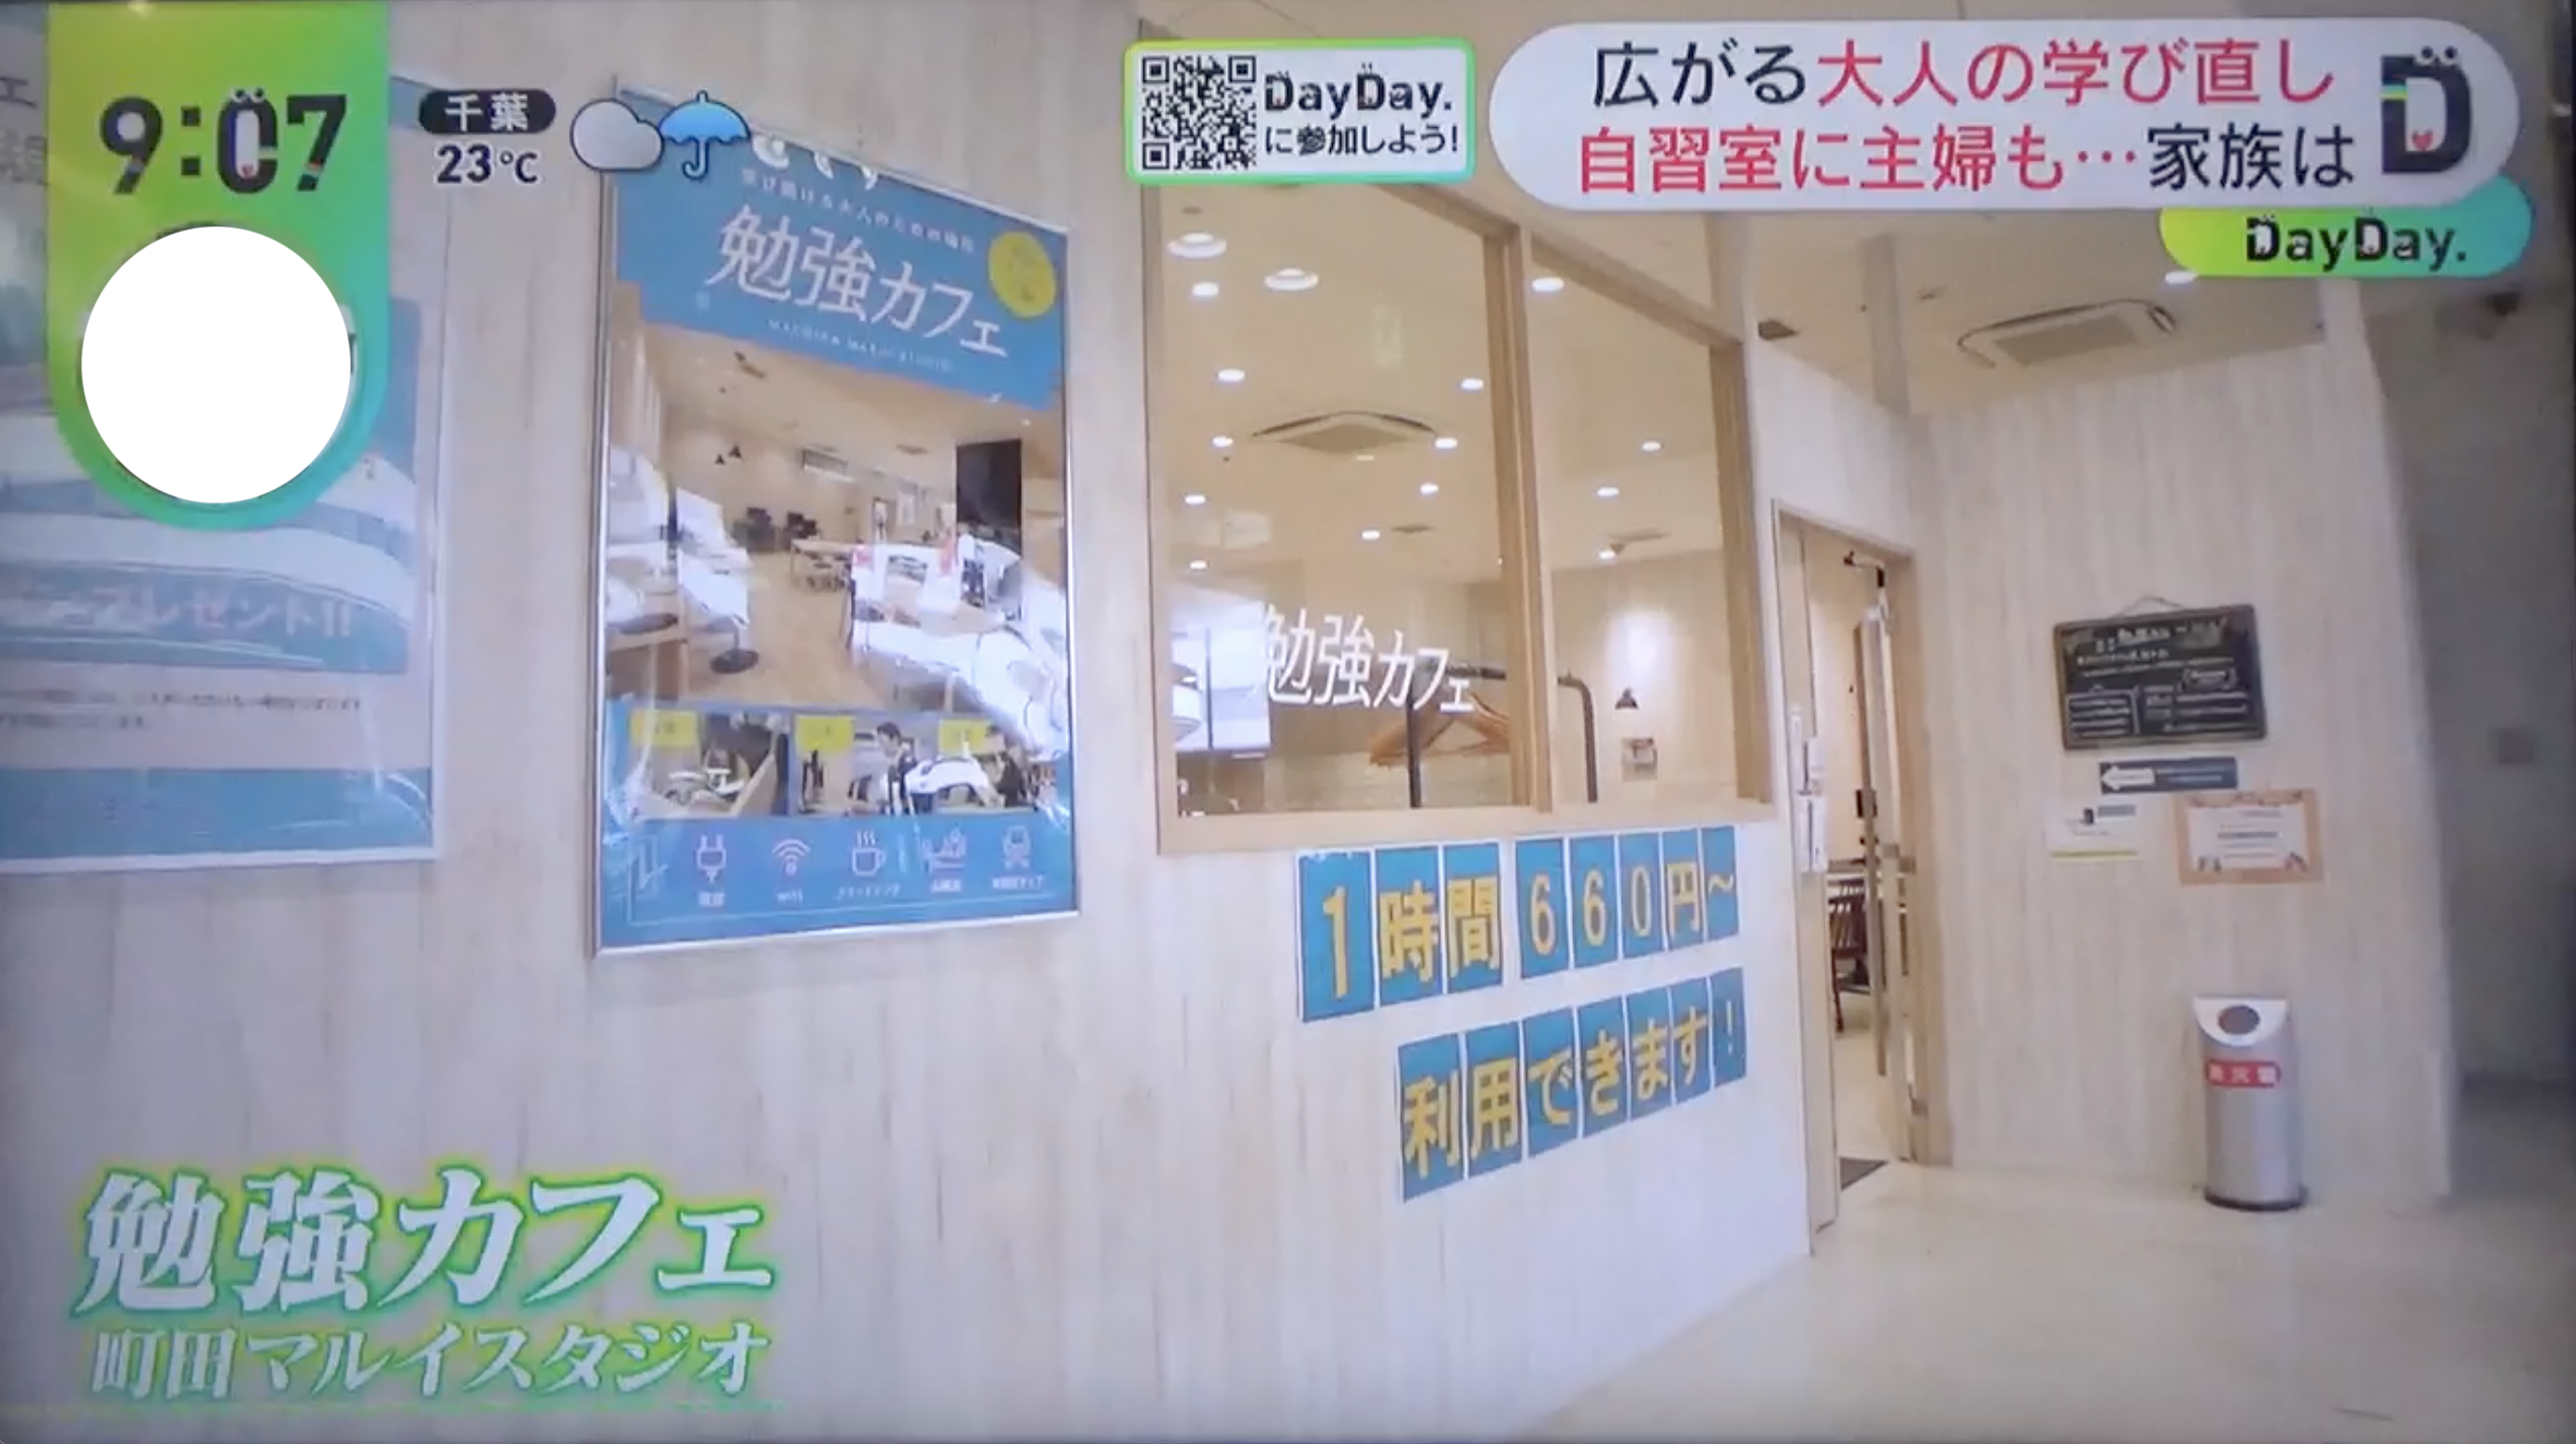 【メディア掲載】日本テレビ「DayDay.」にて勉強カフェが特集されました！